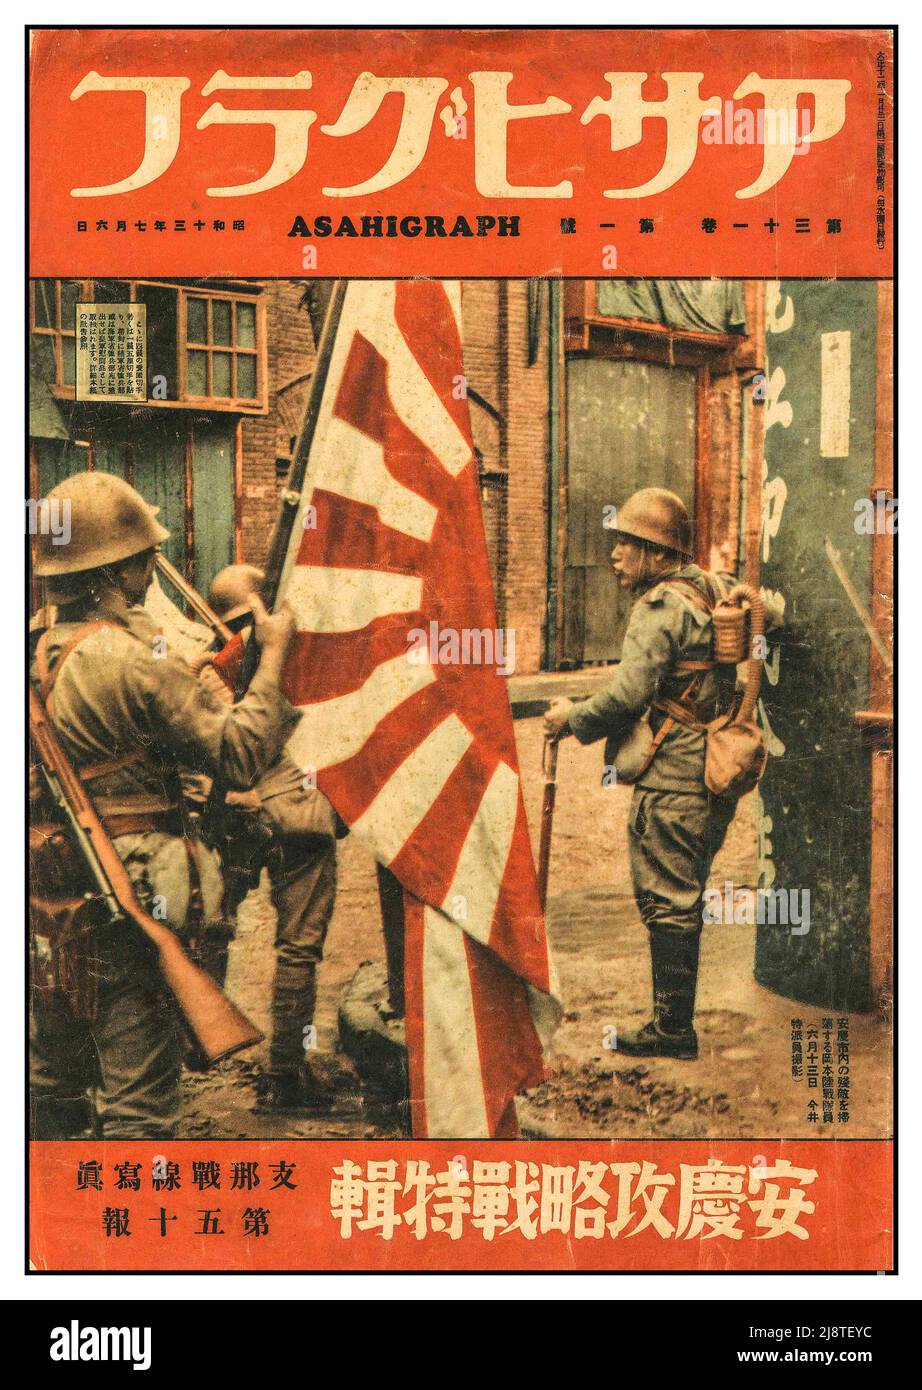 ASAHIGRAPH WW2 Revista de propaganda japonesa con soldados que portan la bandera imperial de Japón La portada de la revista semanal pictórica japonesa Asahiggraph, vol. 31 No. 1 Segunda Guerra Mundial Foto de stock